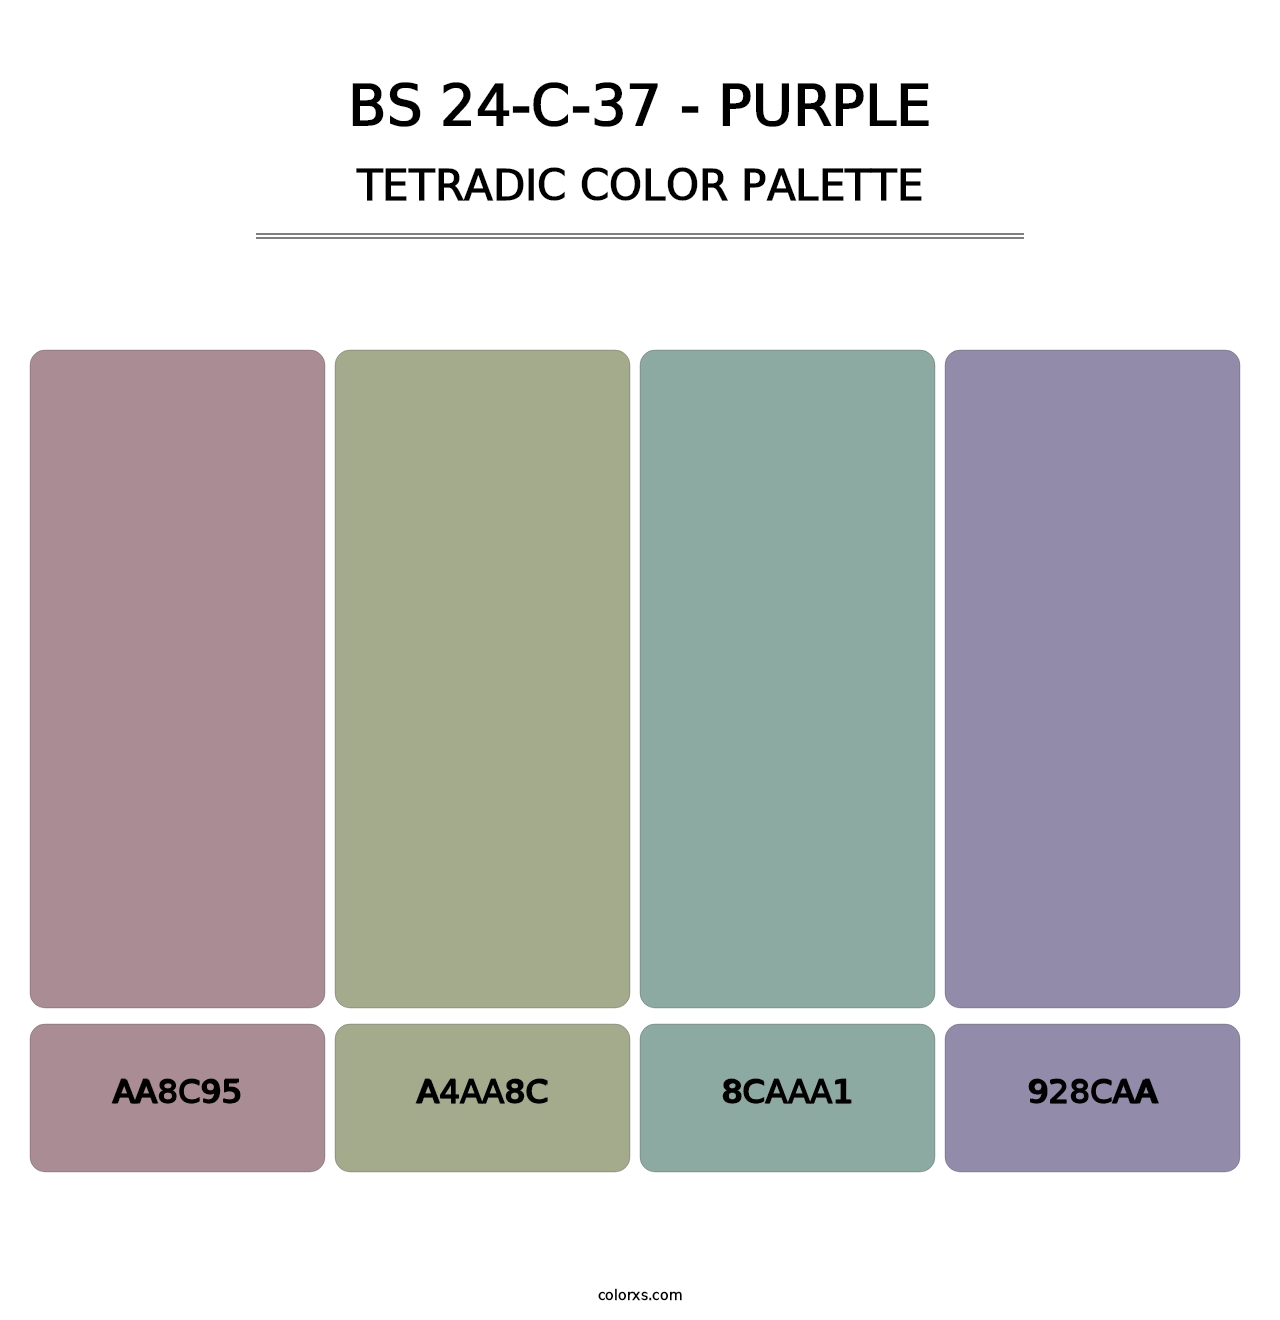 BS 24-C-37 - Purple - Tetradic Color Palette